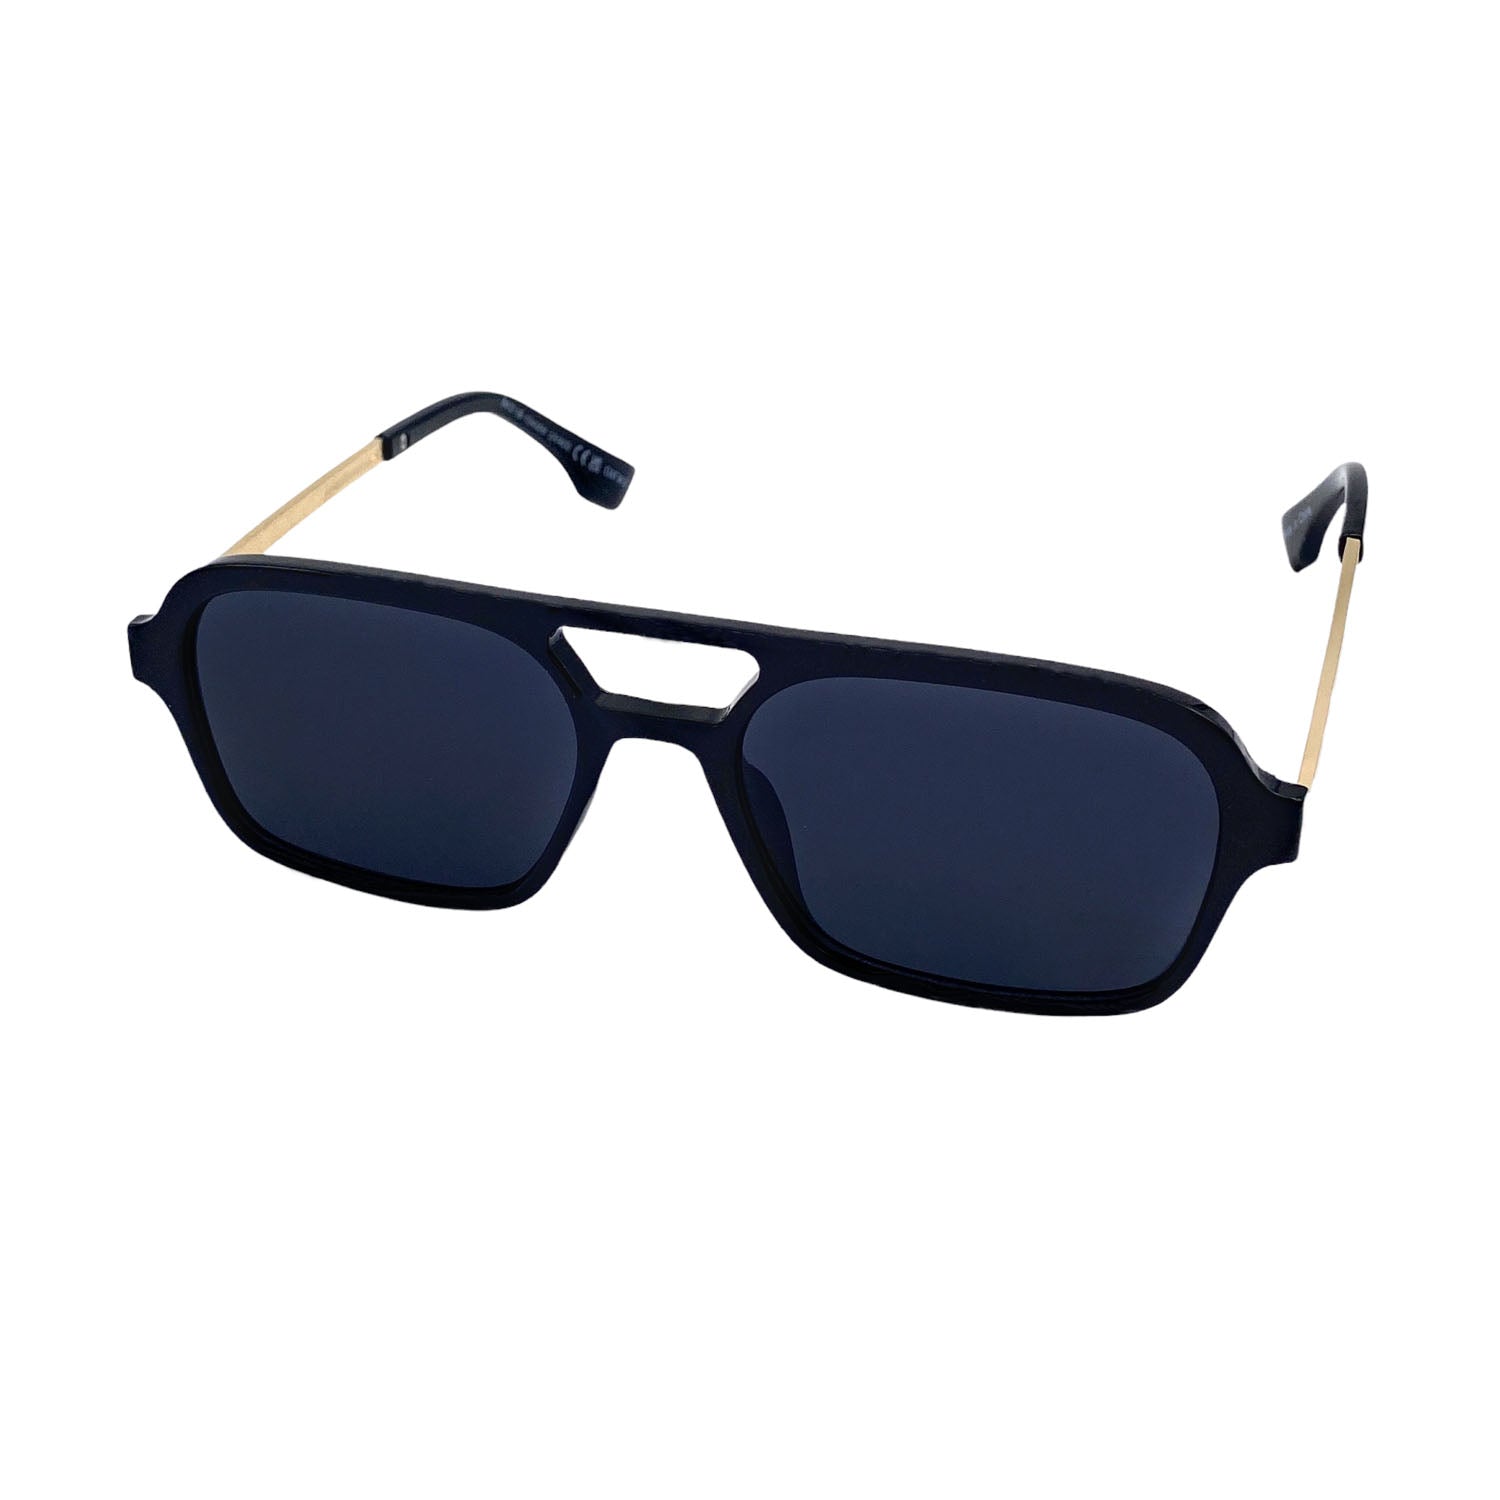 Best UV Protection Sunglasses For Women